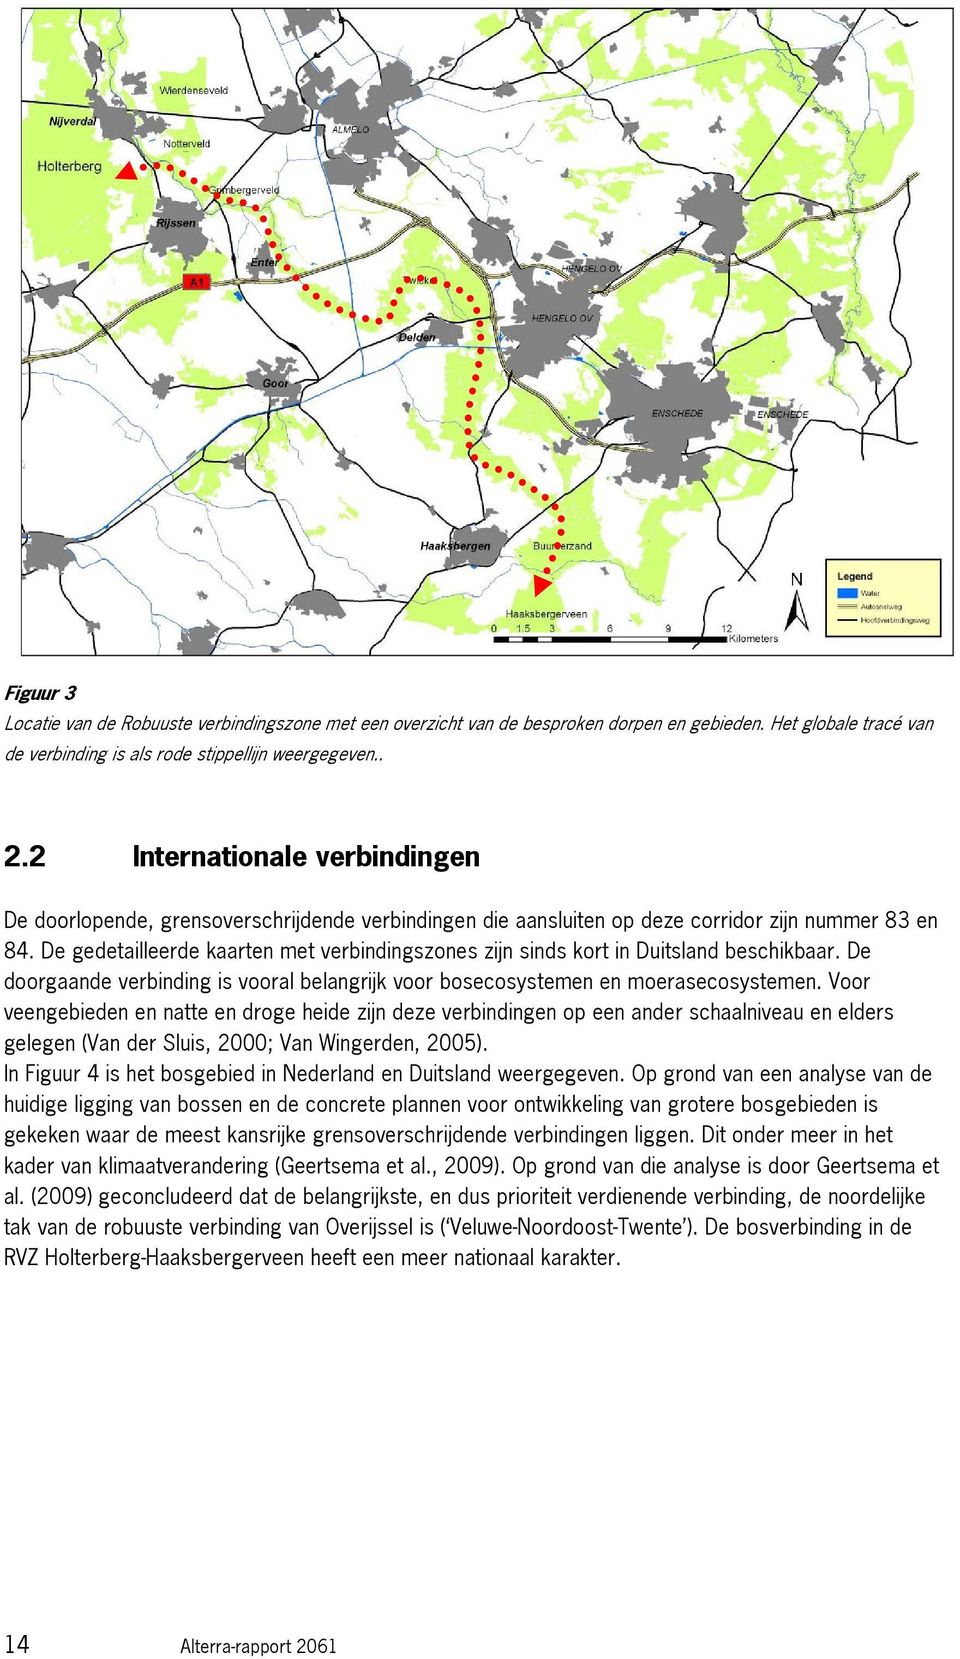 Mogelijke Ecologische verbindingszone (ook voor edelhert) tussen bosgebieden bij Ahaus-Vreden (NW) over de veengebieden Ammeloerveen (NW), Haaksbergerveen en Witte Veen tot de Sallandse Heuvelrug 85